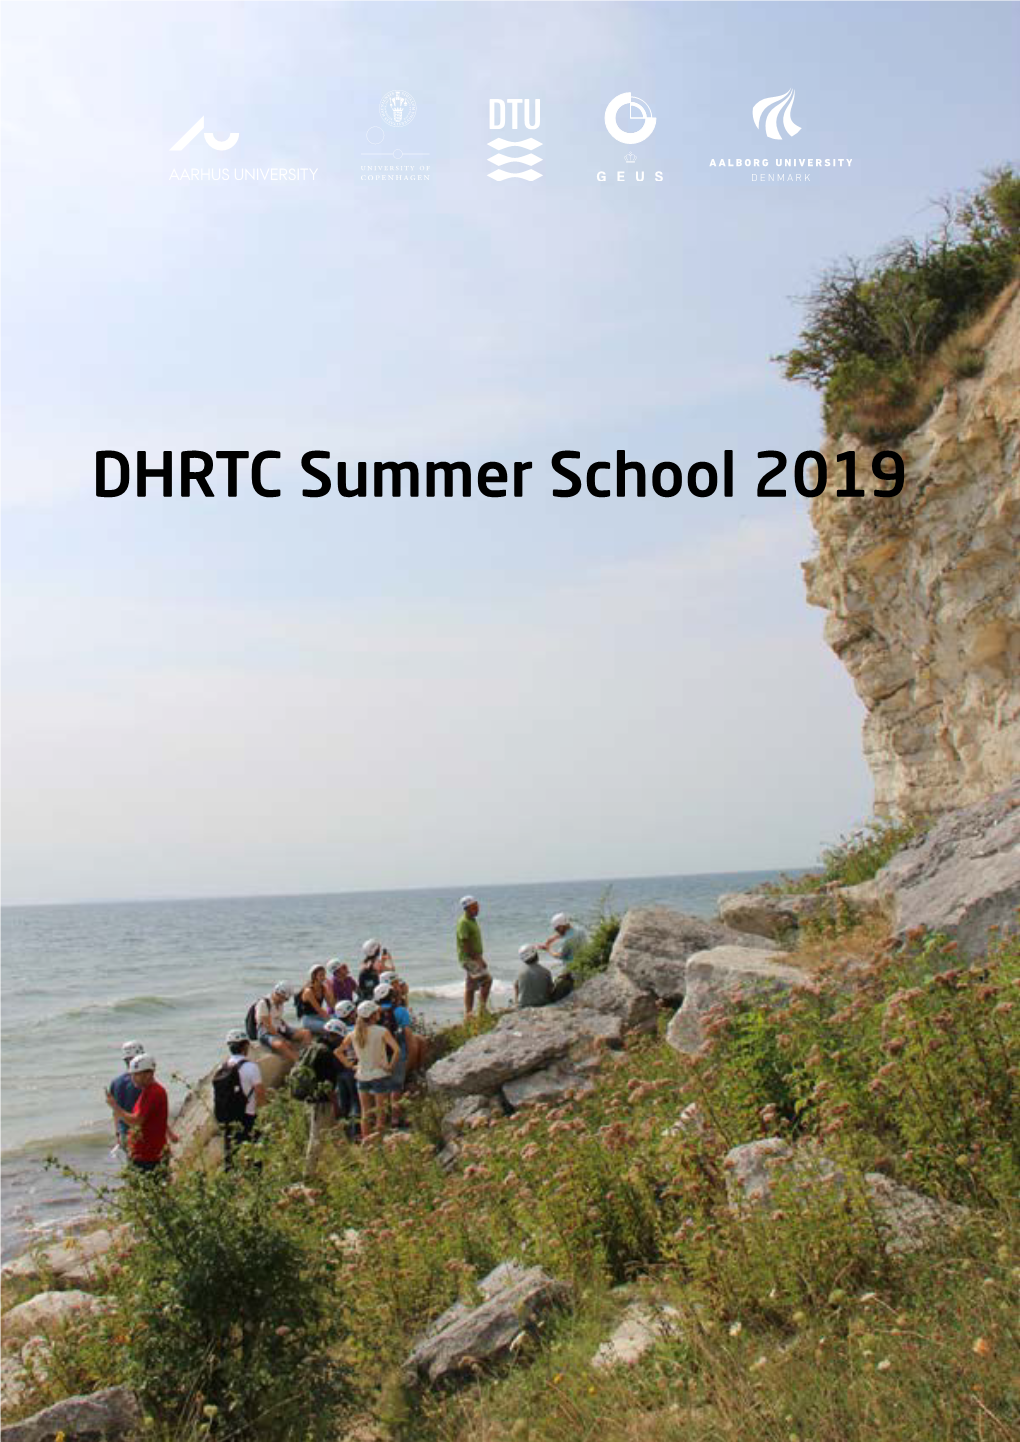 DHRTC Summer School 2019 2Nd DHRTC Summer School 12-17 August 2019